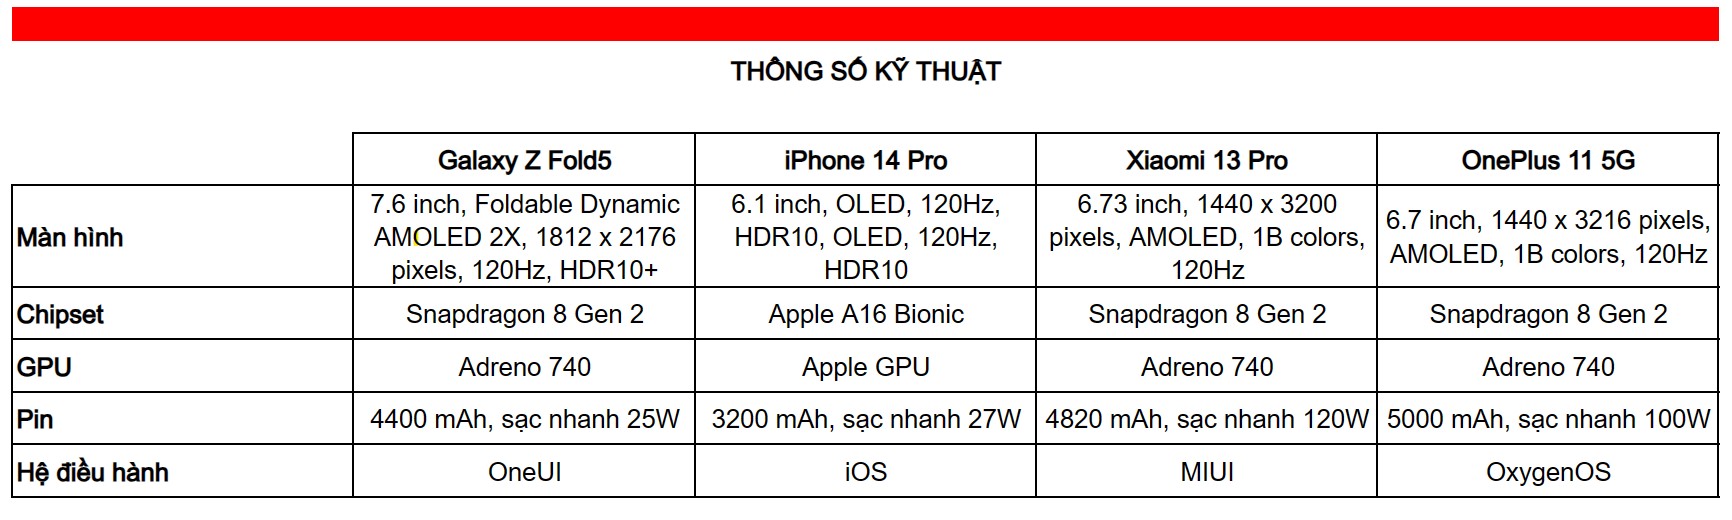 Thông số kỹ thuật Galaxy Z Fold5, iPhone 14 Pro, Xiaomi 13 Pro và OnePlus 11 5G